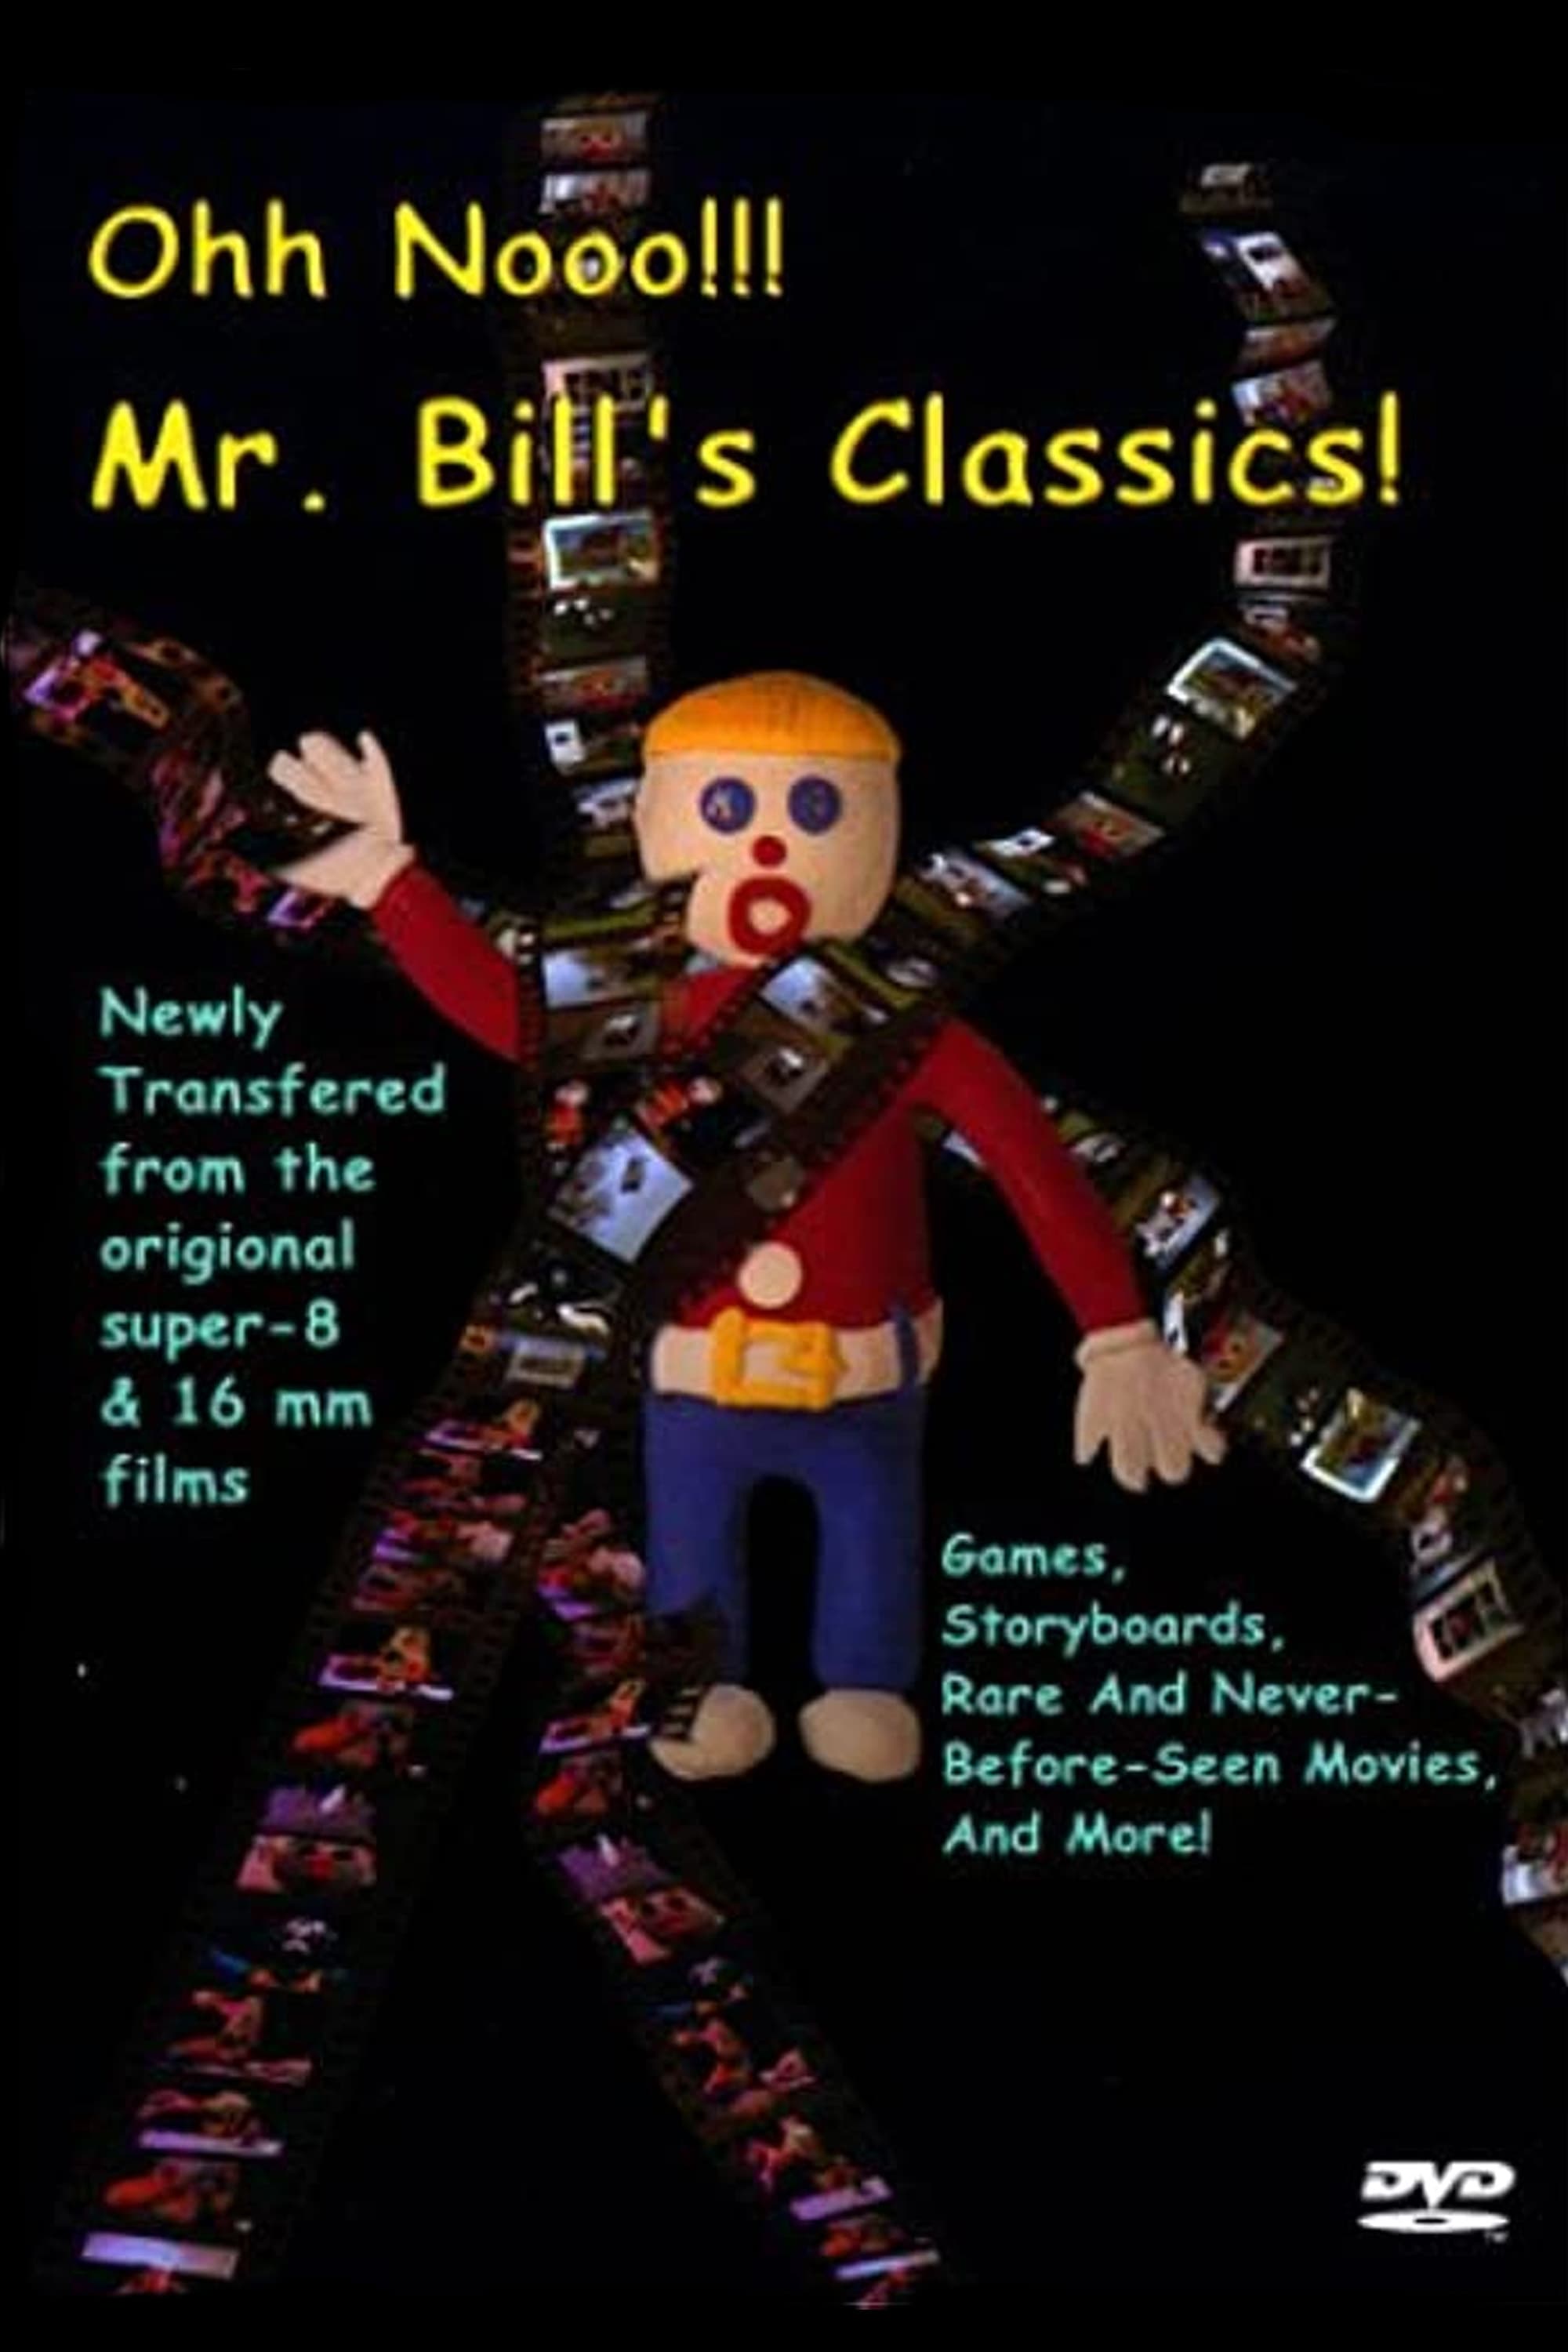 Ohh Nooo!!! Mr. Bill's Classics!